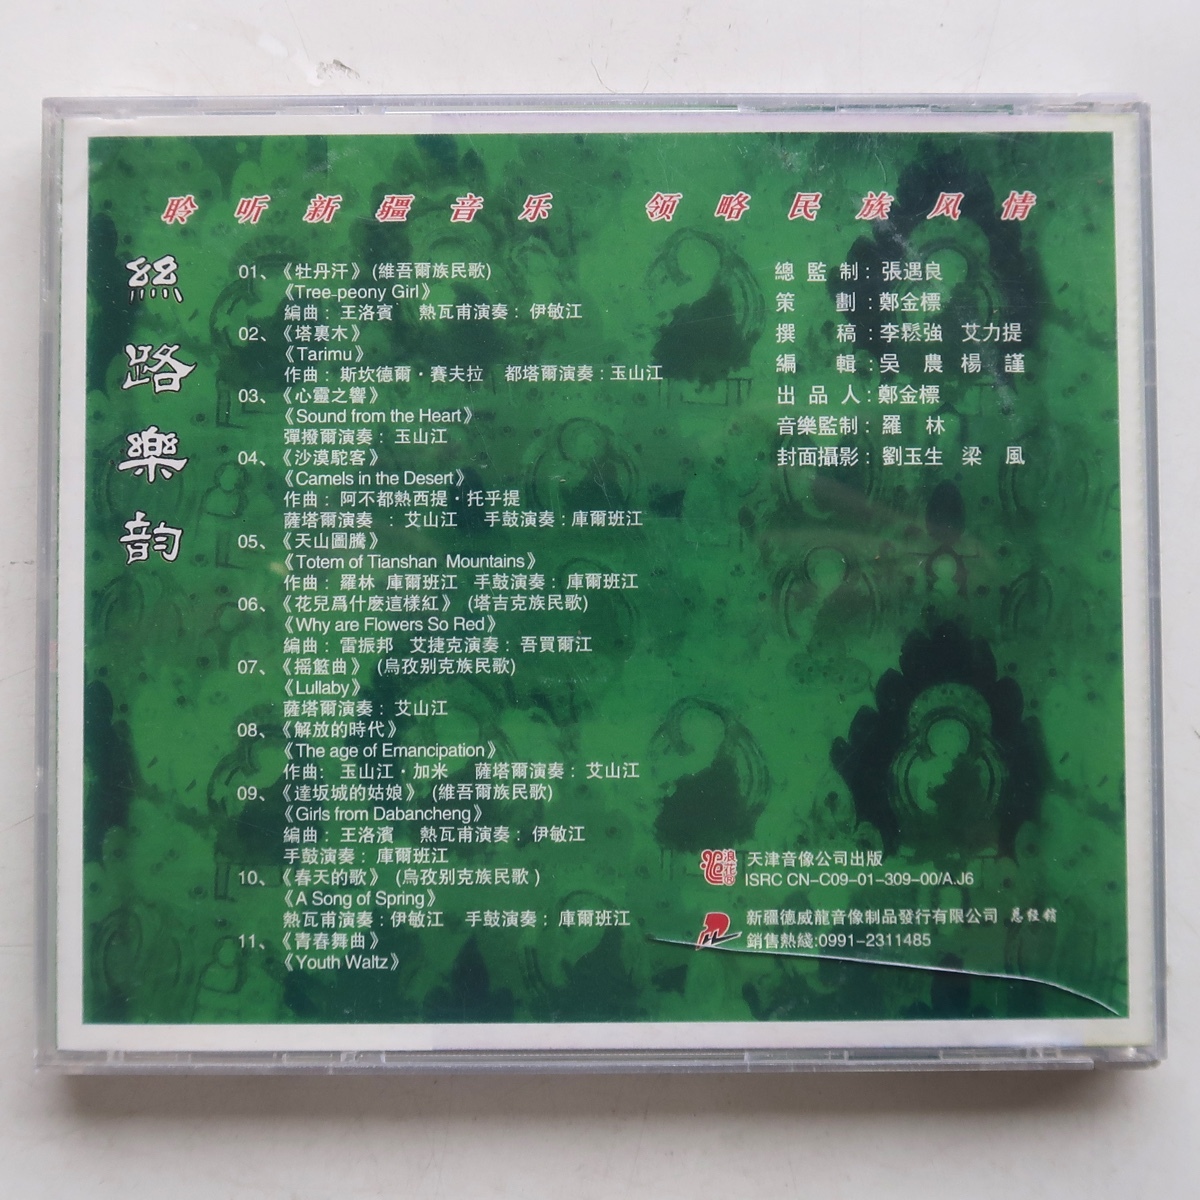 CD 絲路楽韵 新疆音楽 天津音像公司出版 中国盤_画像2